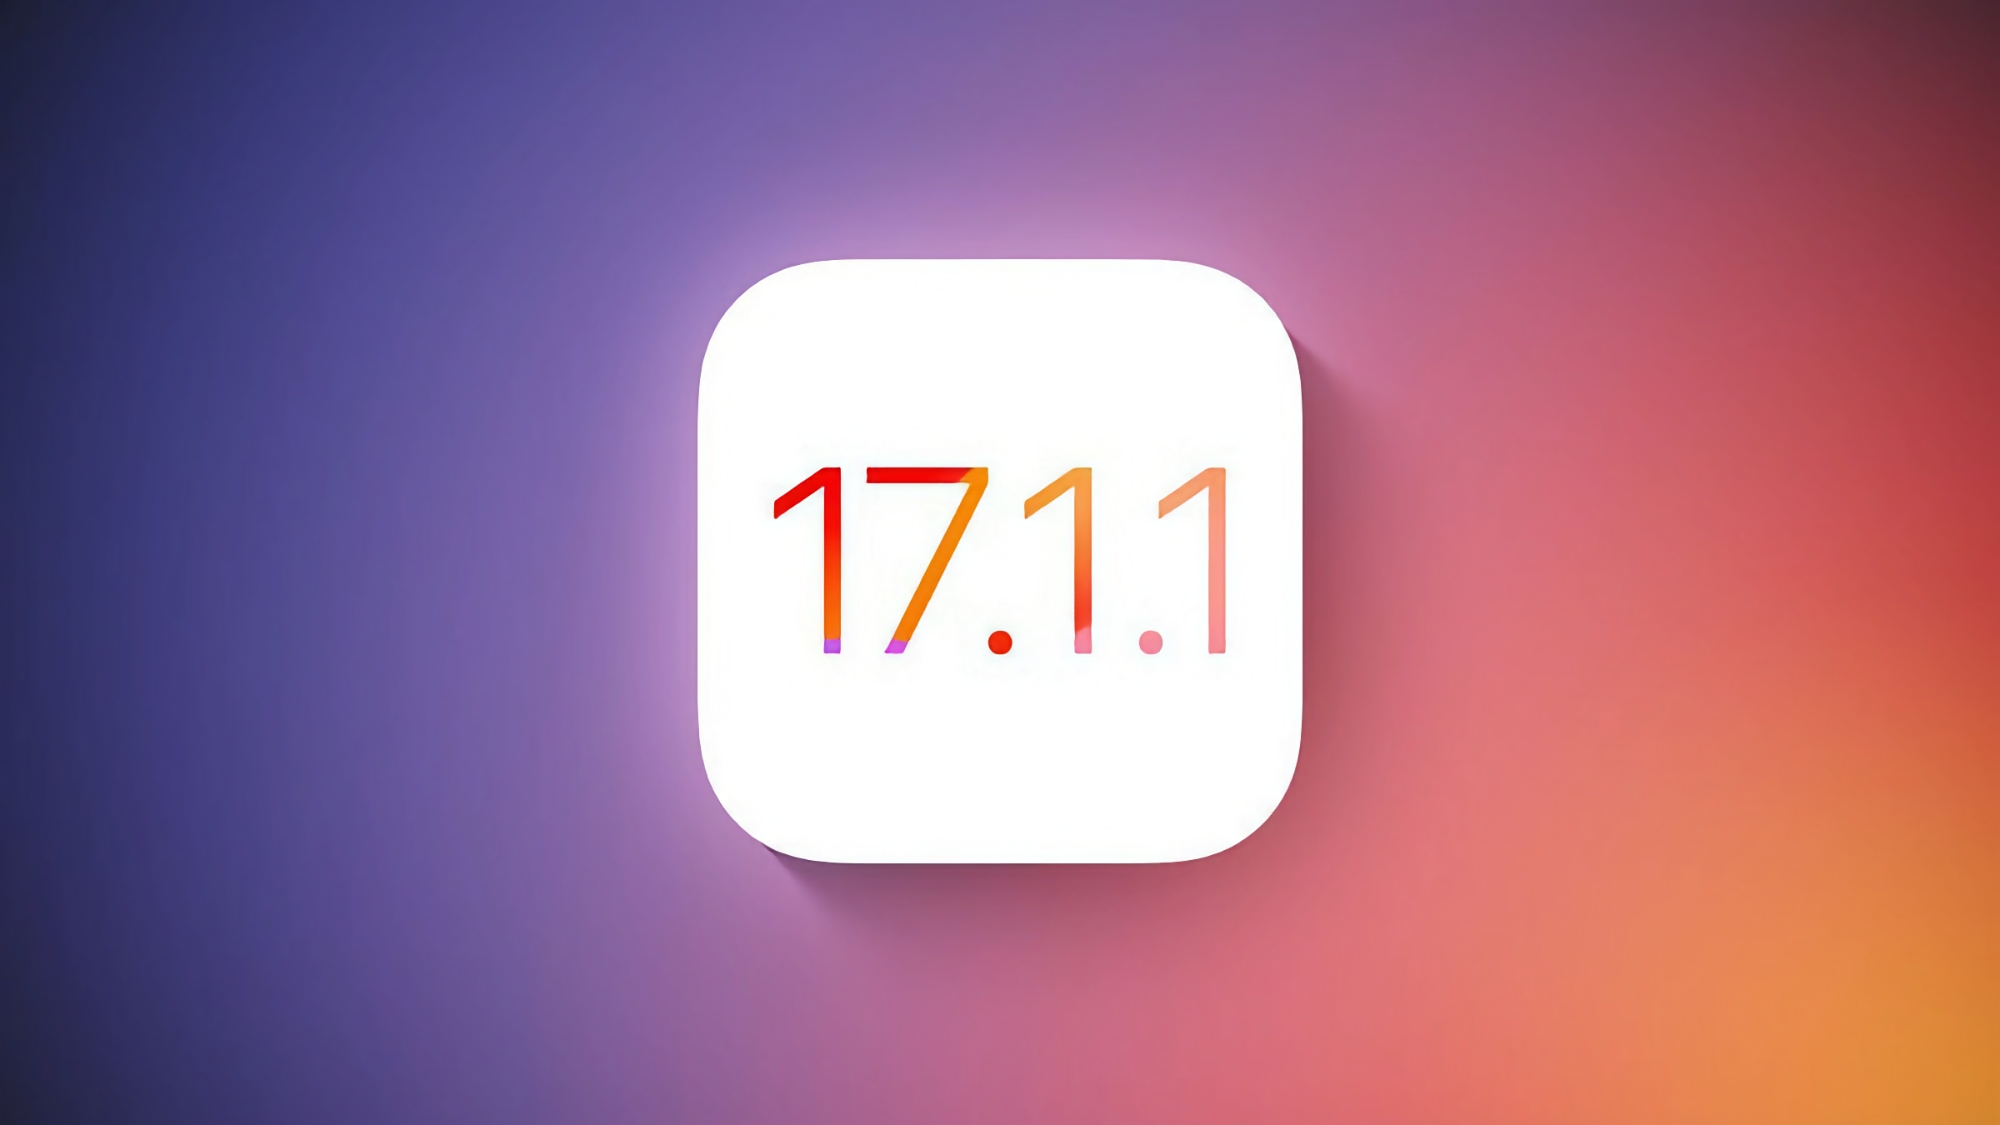 Apple wyda iOS 17.1.1.1 dla iPhone'a w tym tygodniu, z poprawionymi błędami w systemie